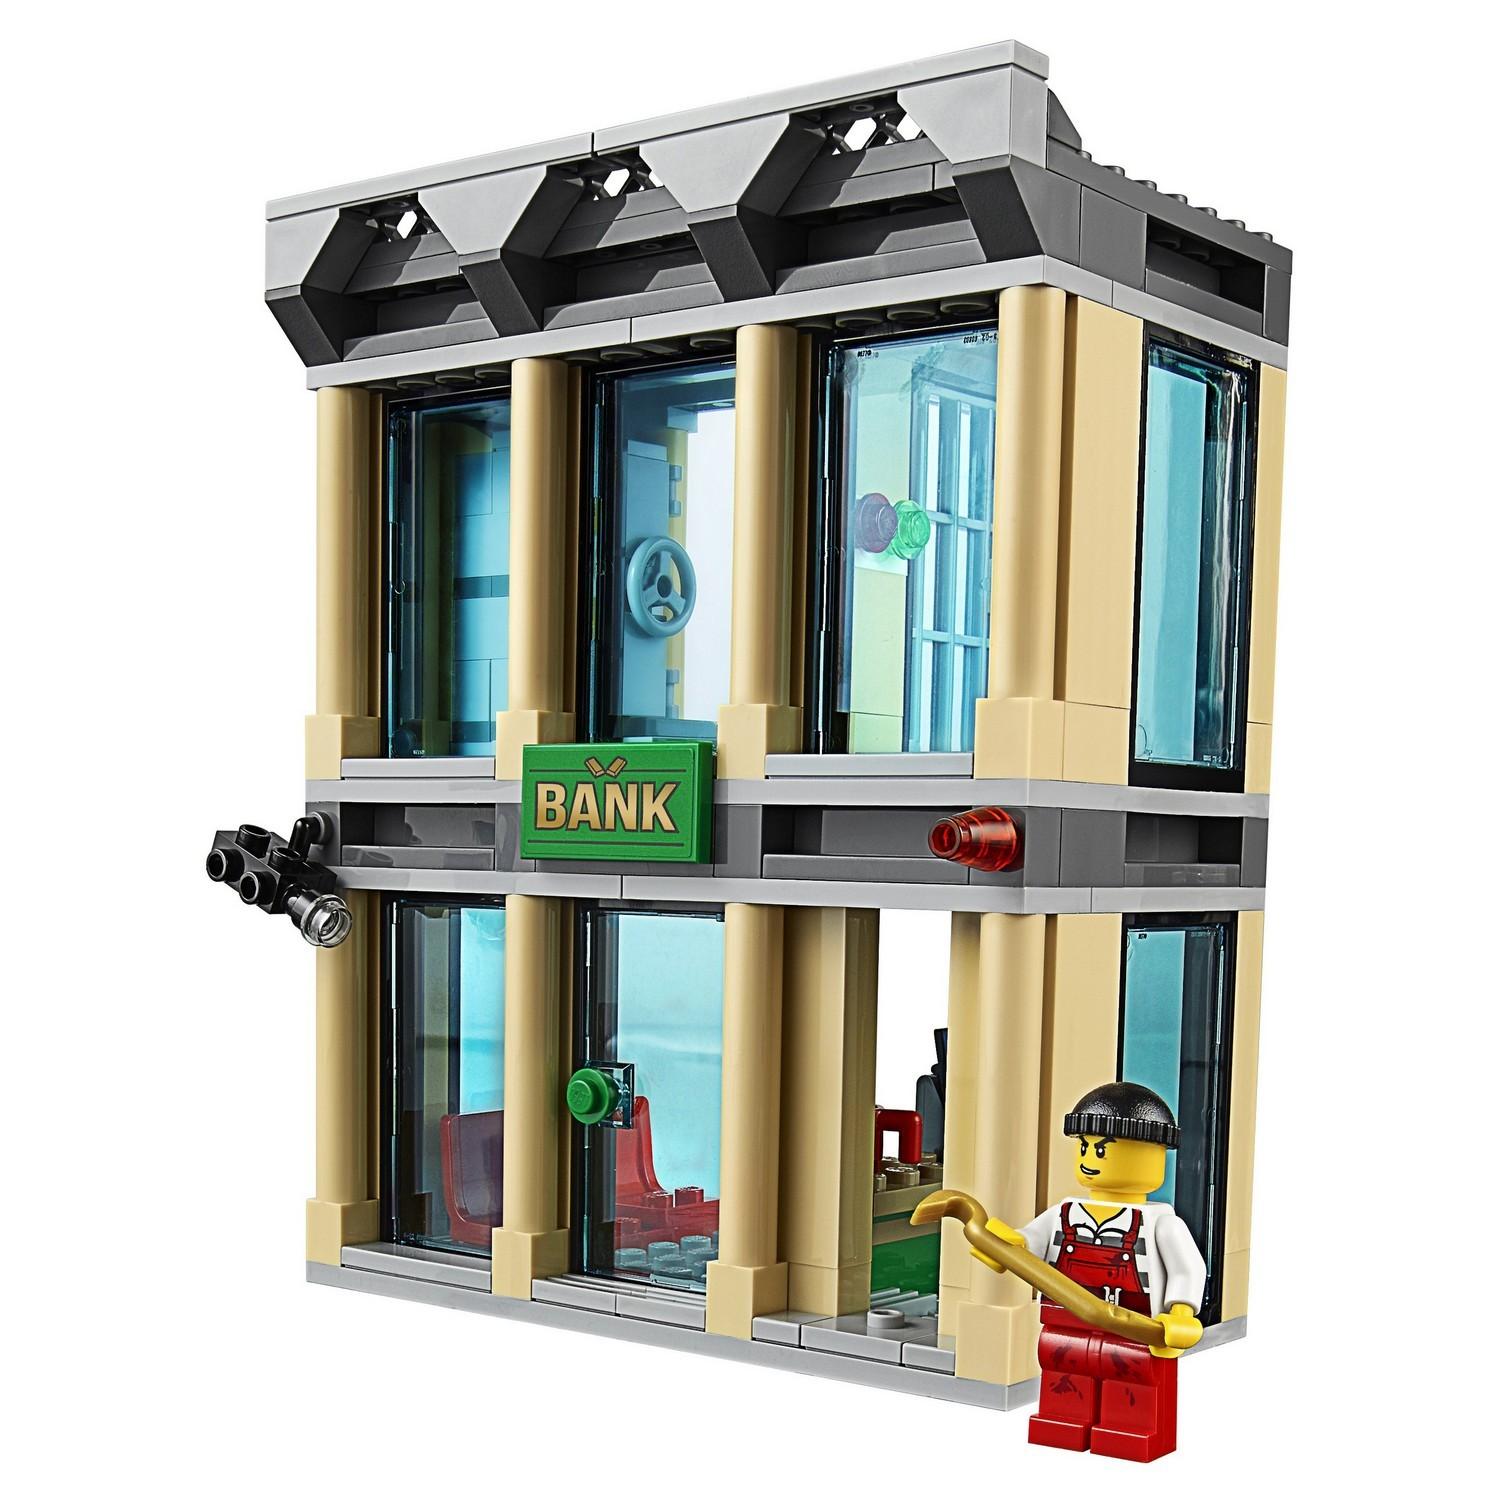 Lego City 60140 Ограбление на бульдозере